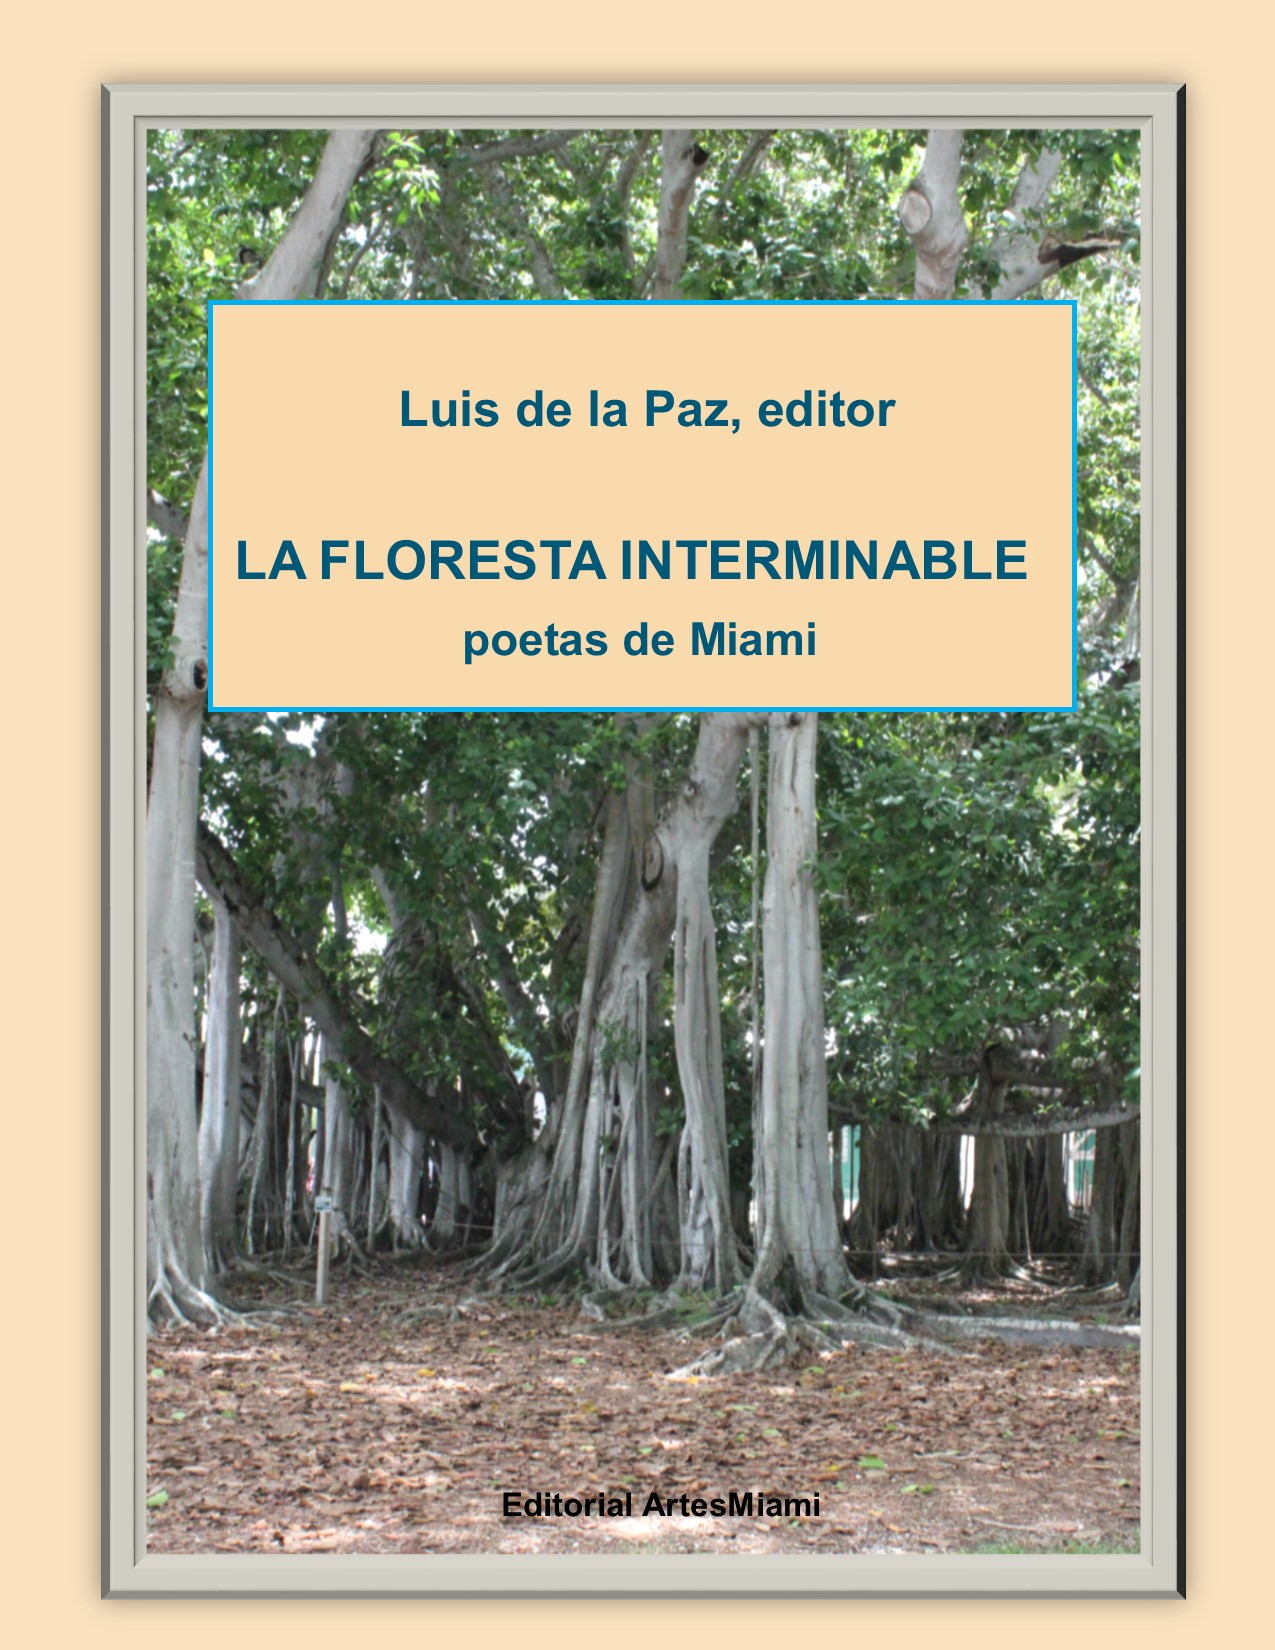 Editorial ArtesMiami present� la colecci�n de poes�a con m�s de 100 poemas